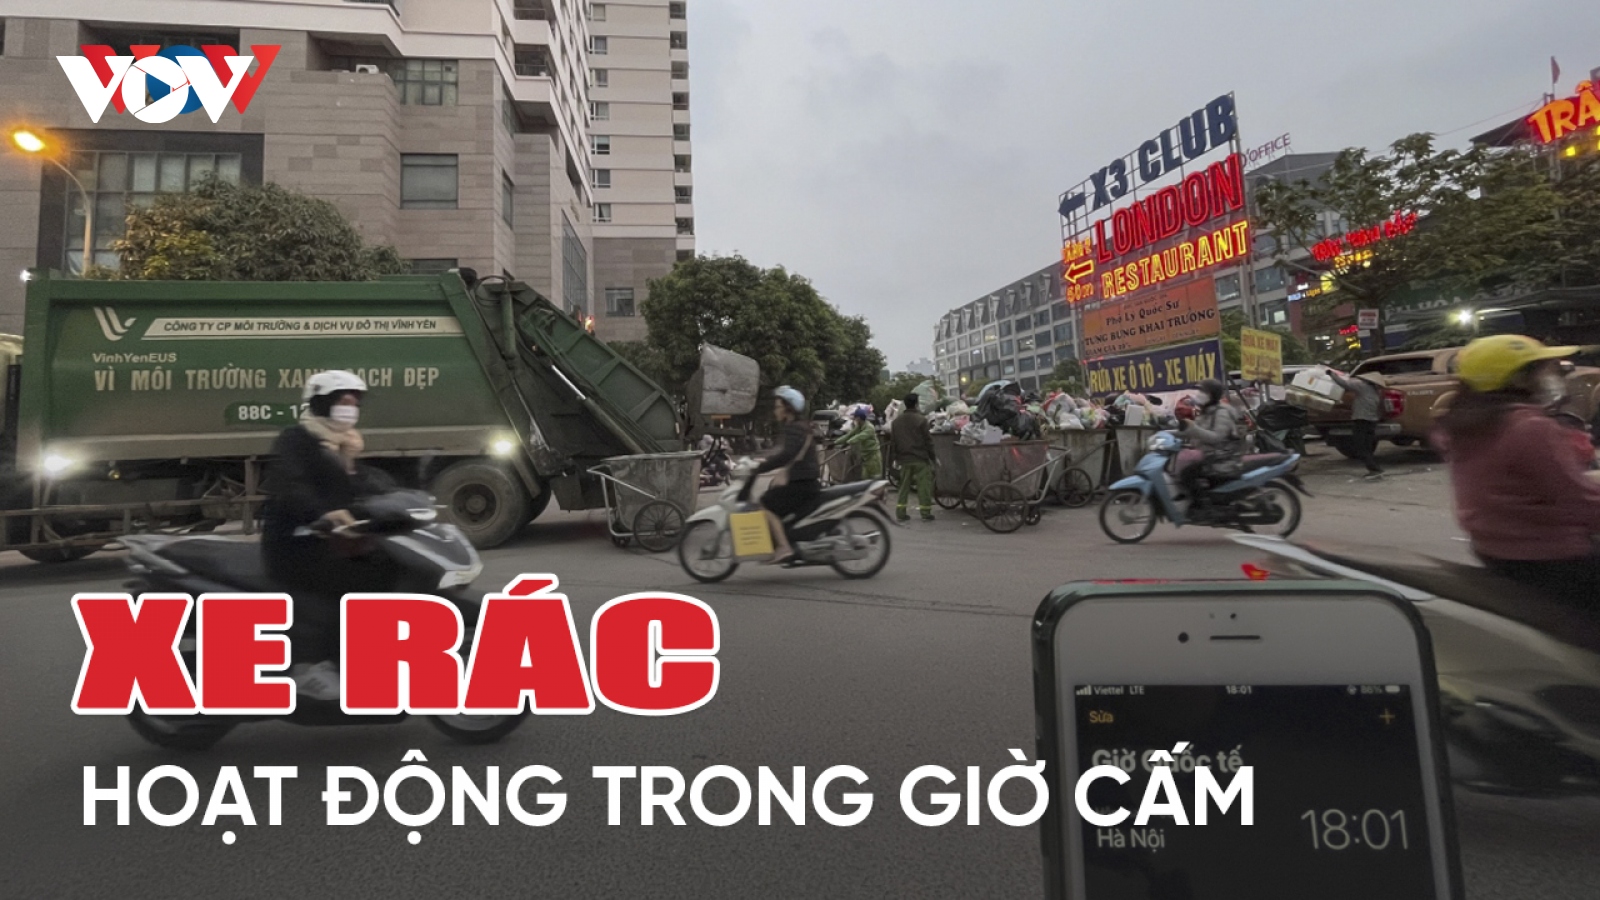 Xe thu gom rác ở Hà Nội hoạt động trong giờ cấm